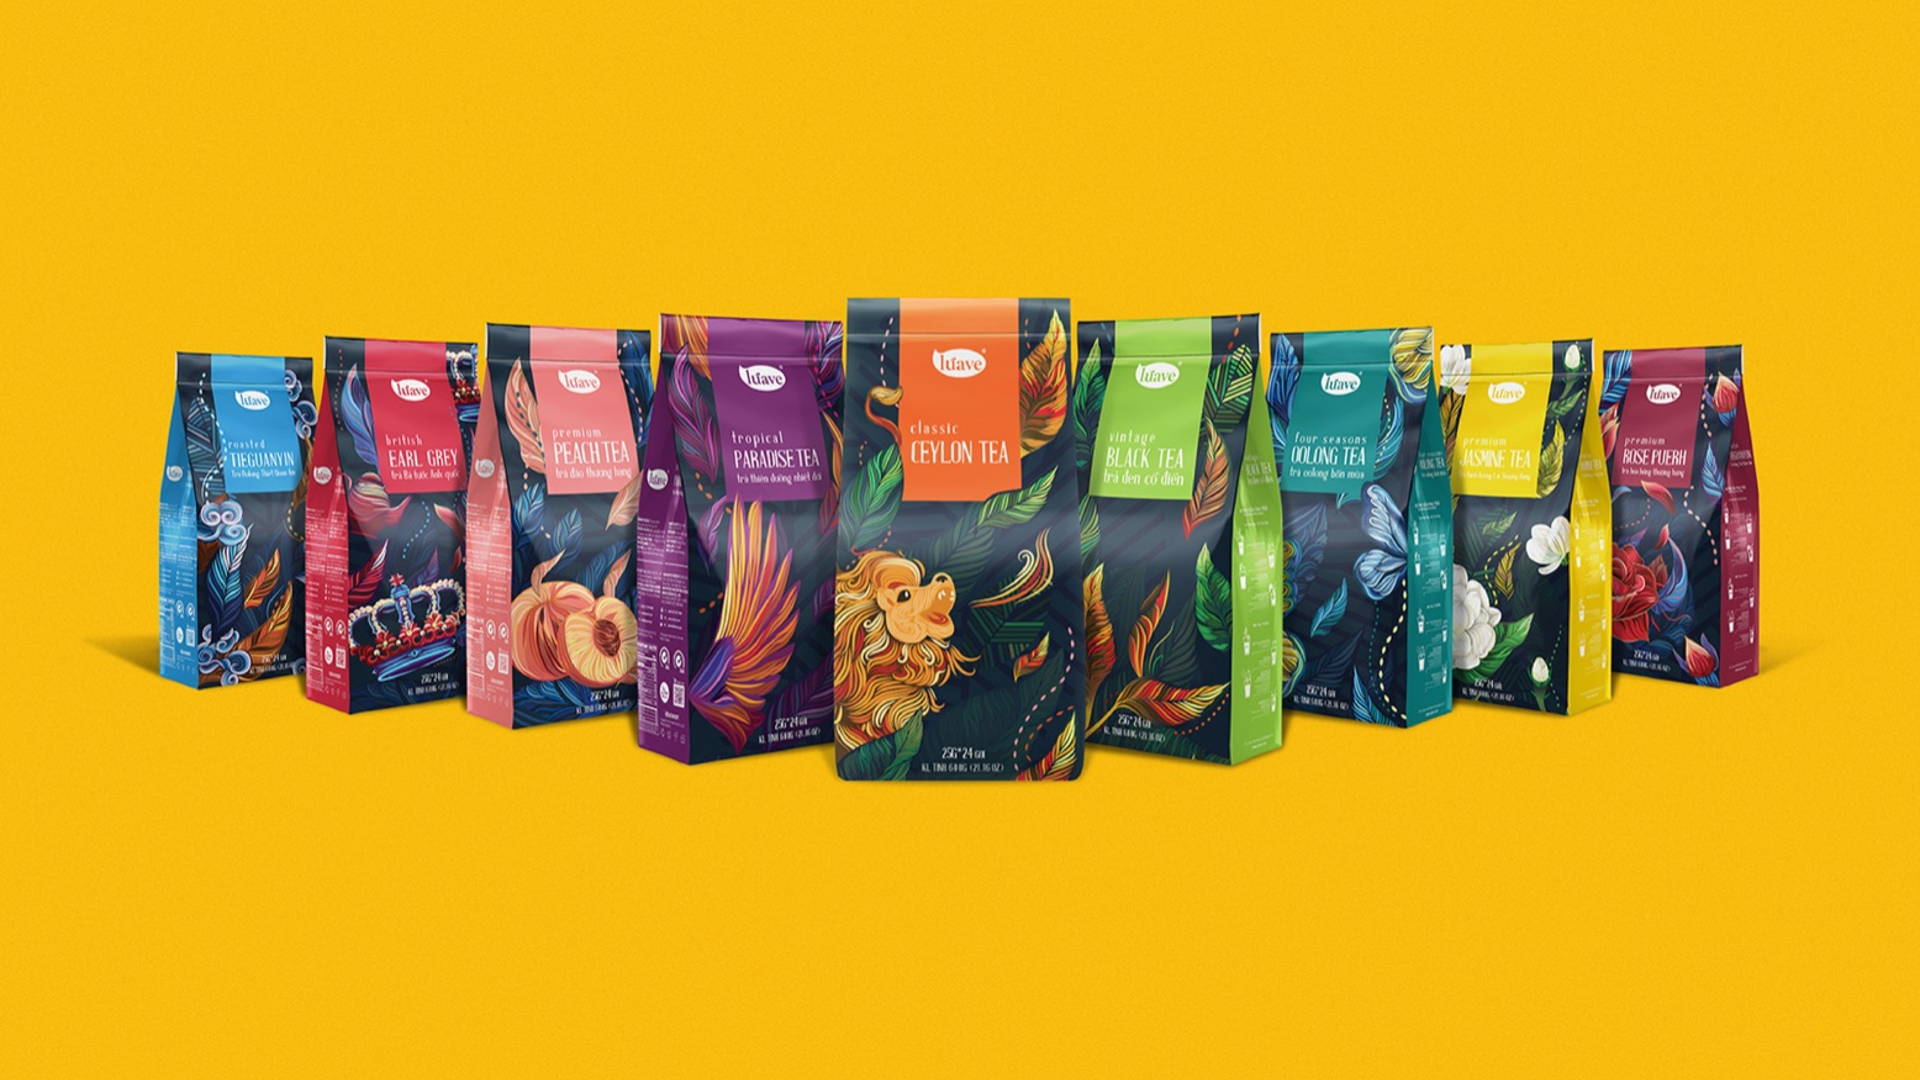 手绘茶叶包装设计 创意茶叶包装设计 茶叶包装设计公司哪家好 第1张